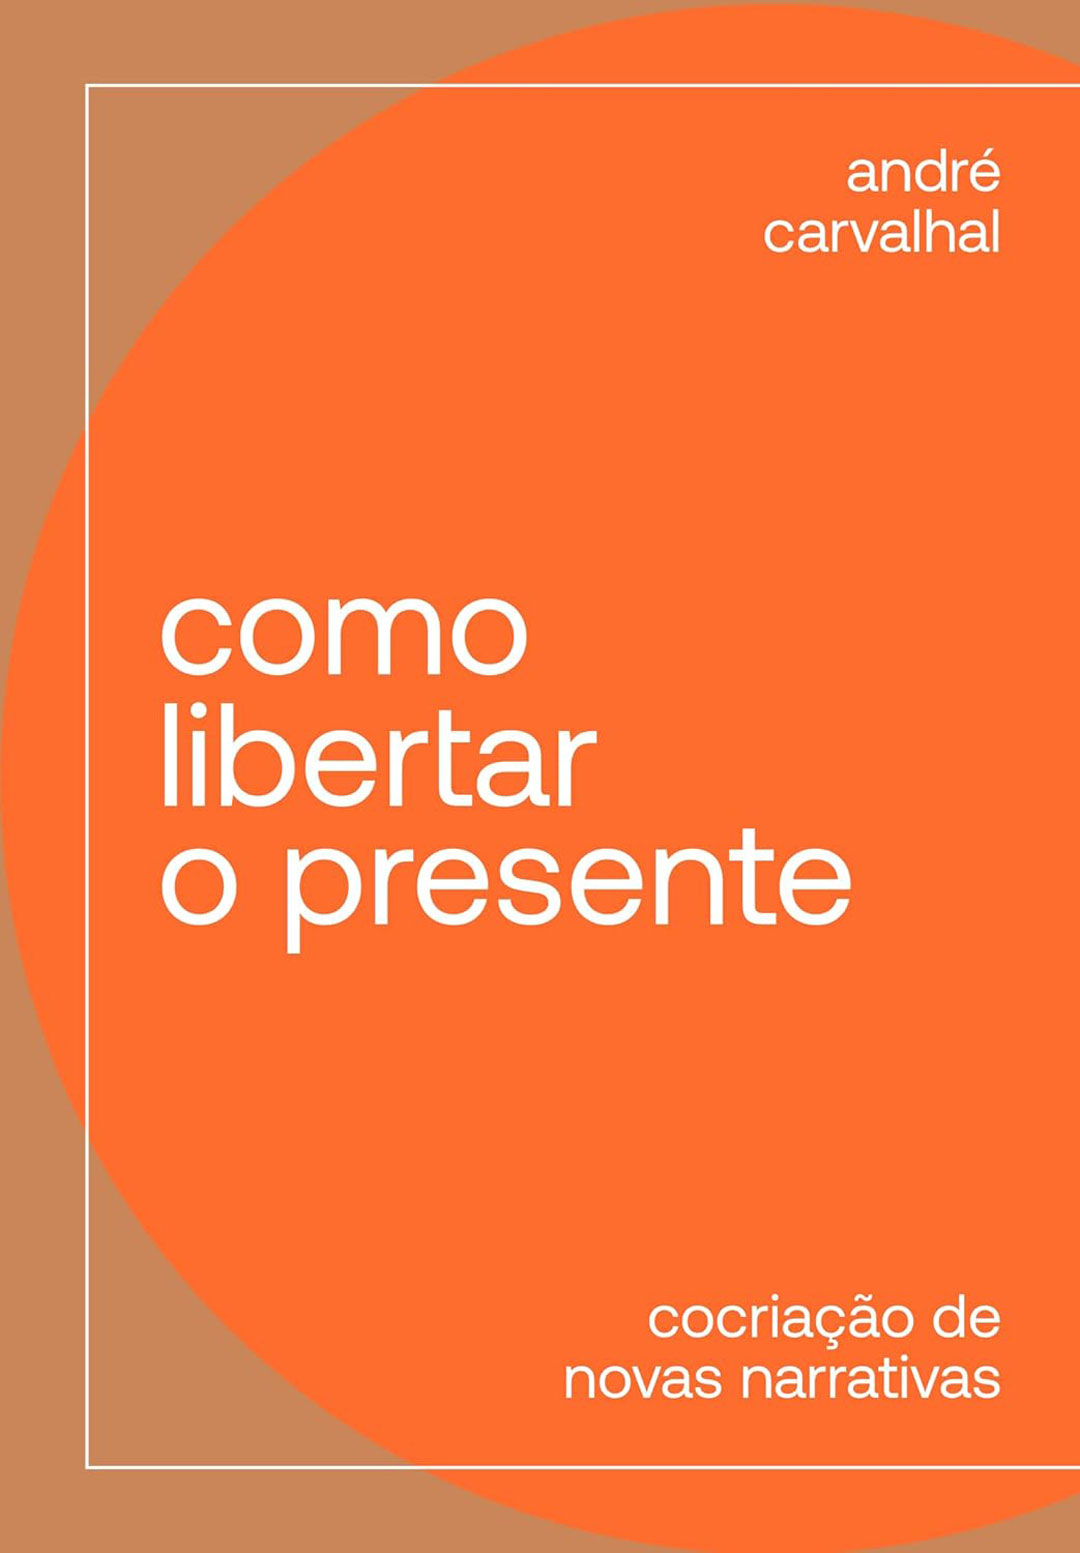 andre-carvalhal-livros-COMO-LIBERTAR-O-PRESENTE-capa